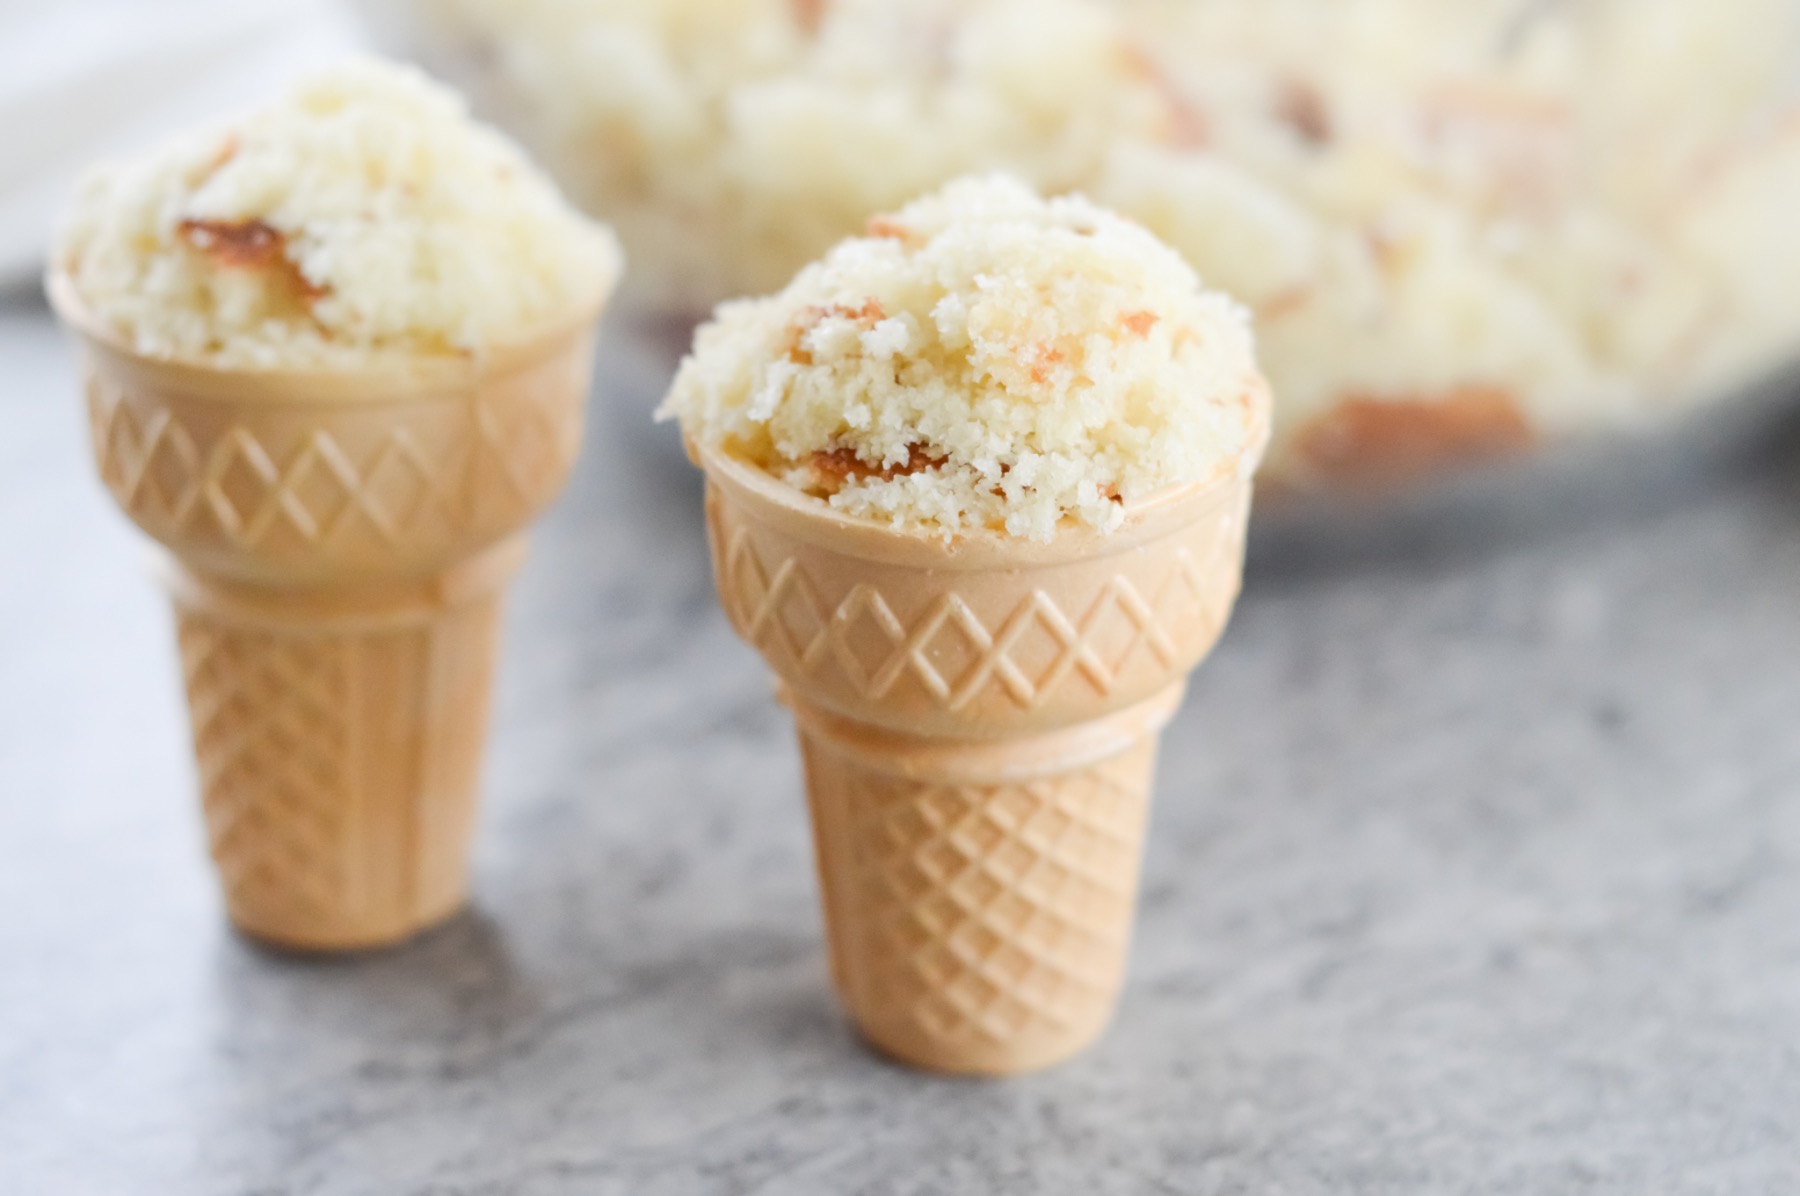 stuff the ice cream cones with cupcakes recipe tutorial